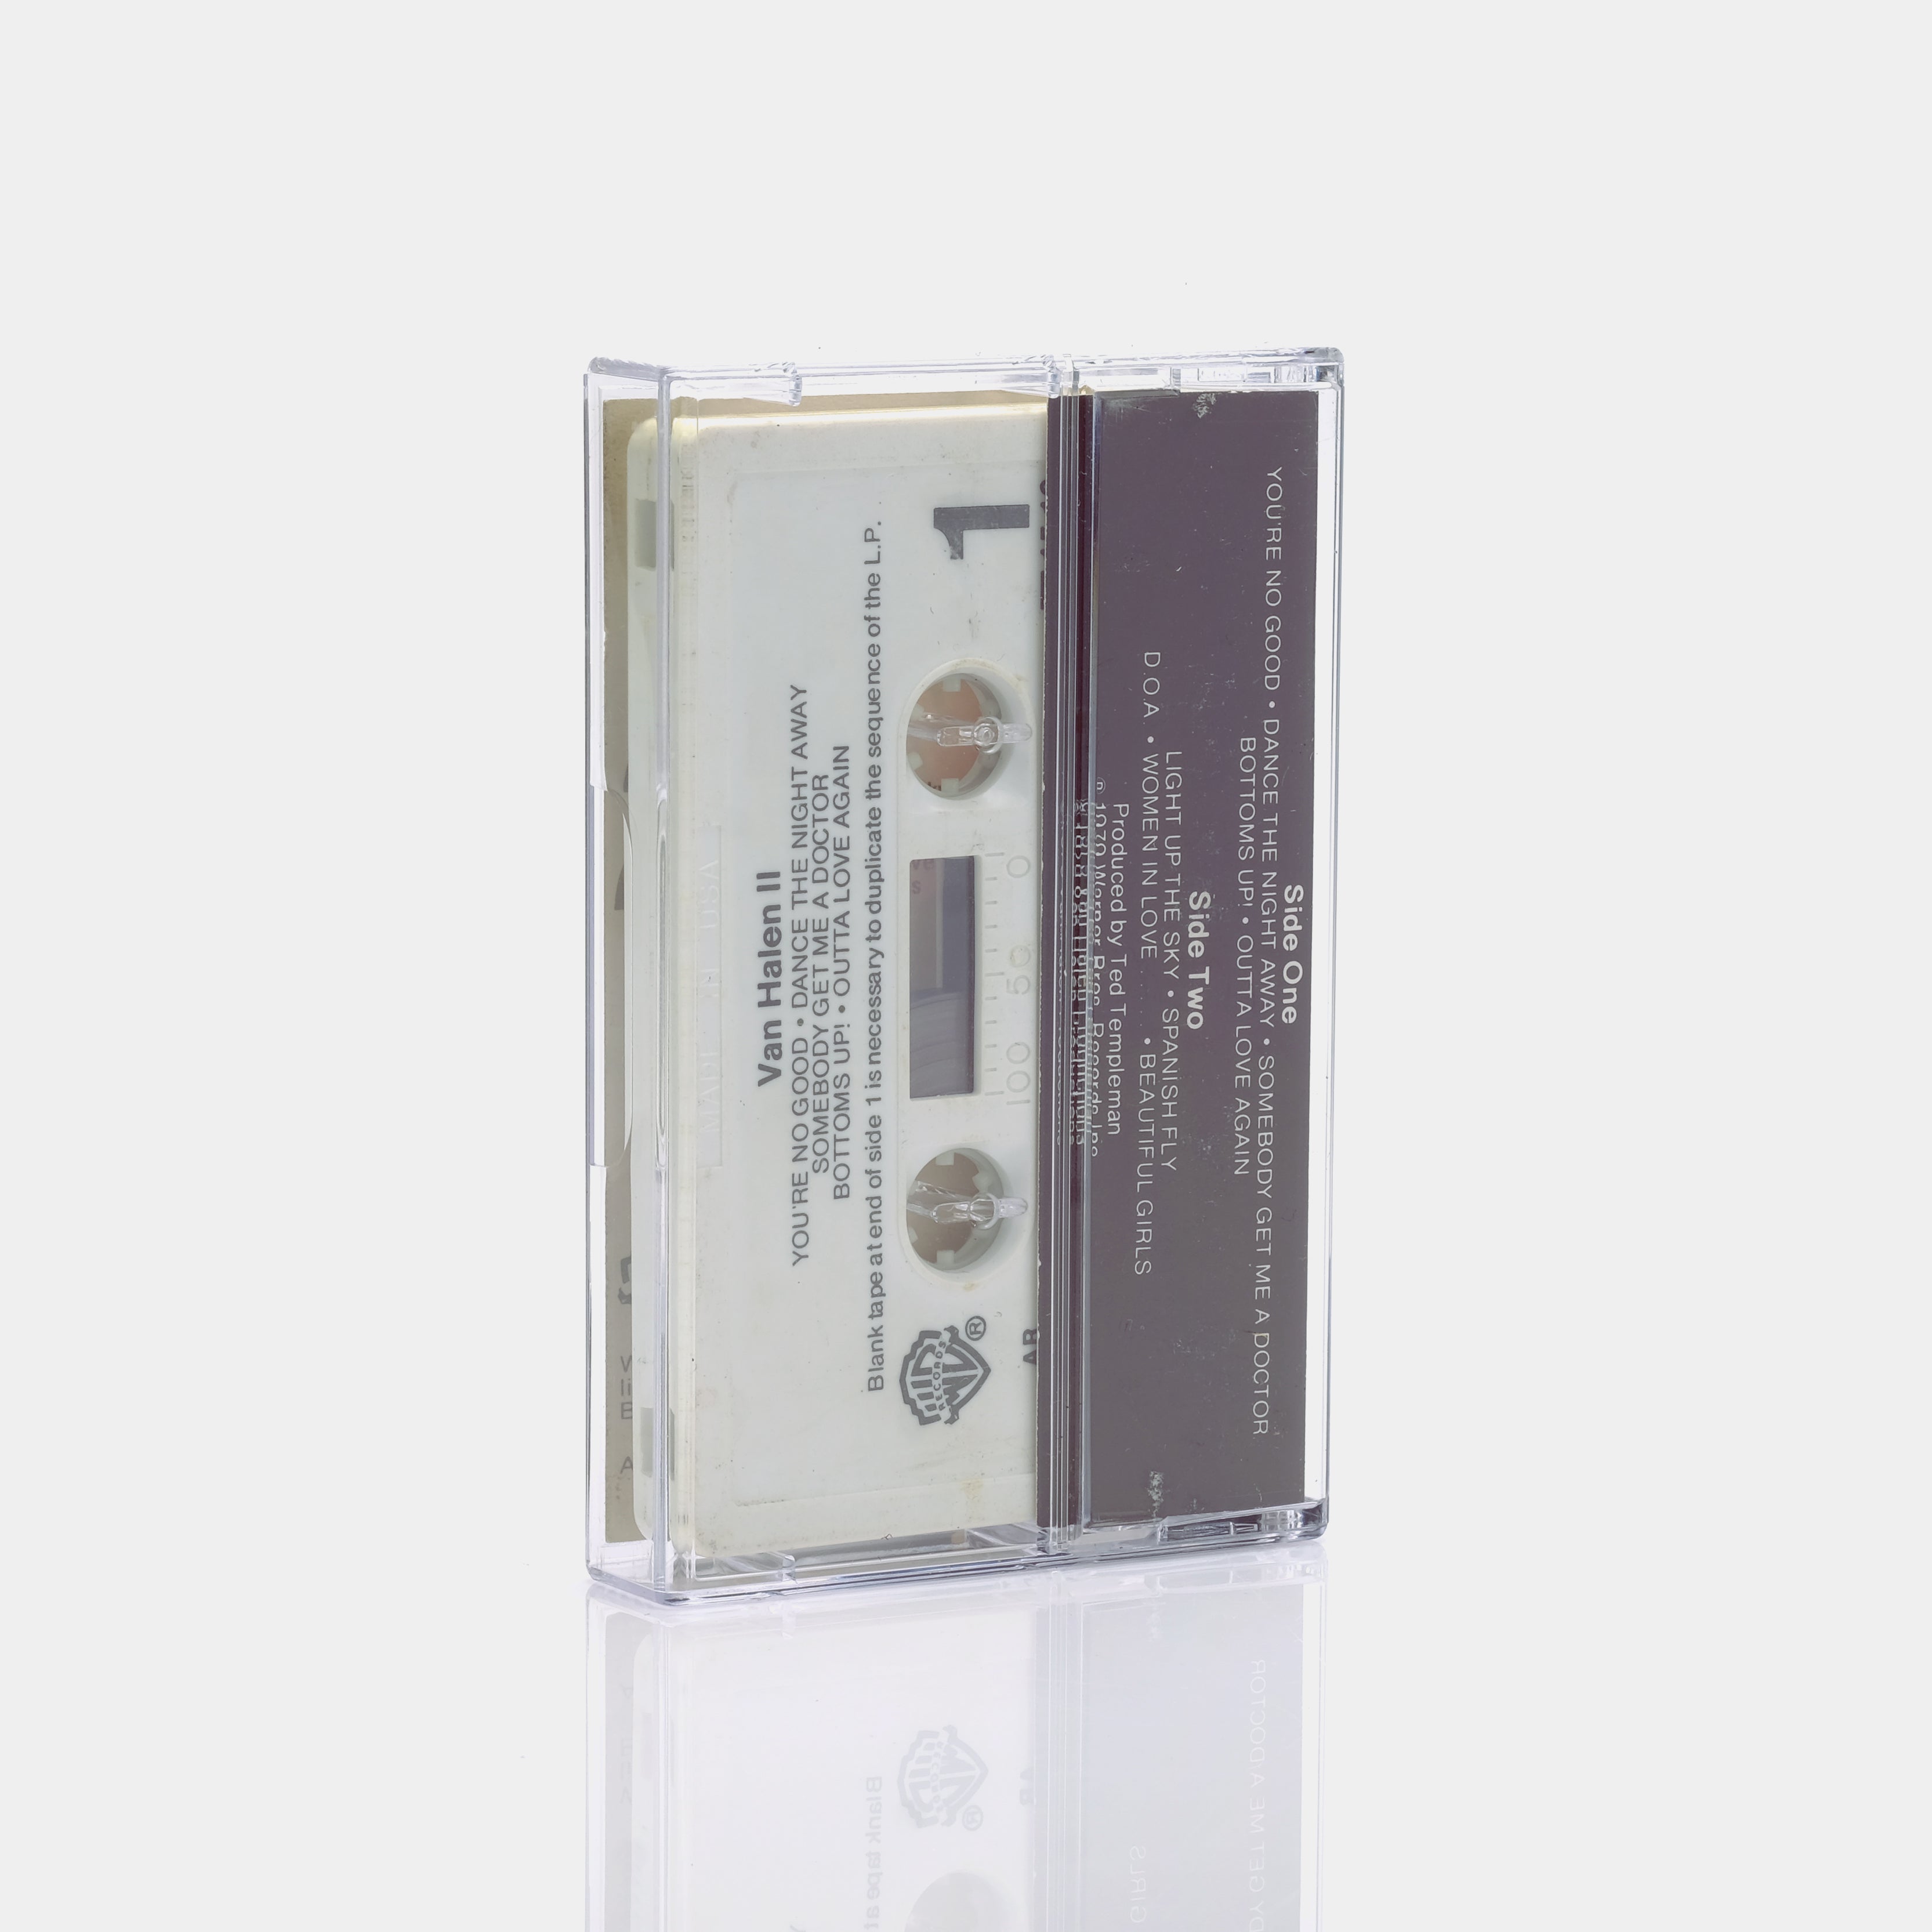 Van Halen - Van Halen II Cassette Tape